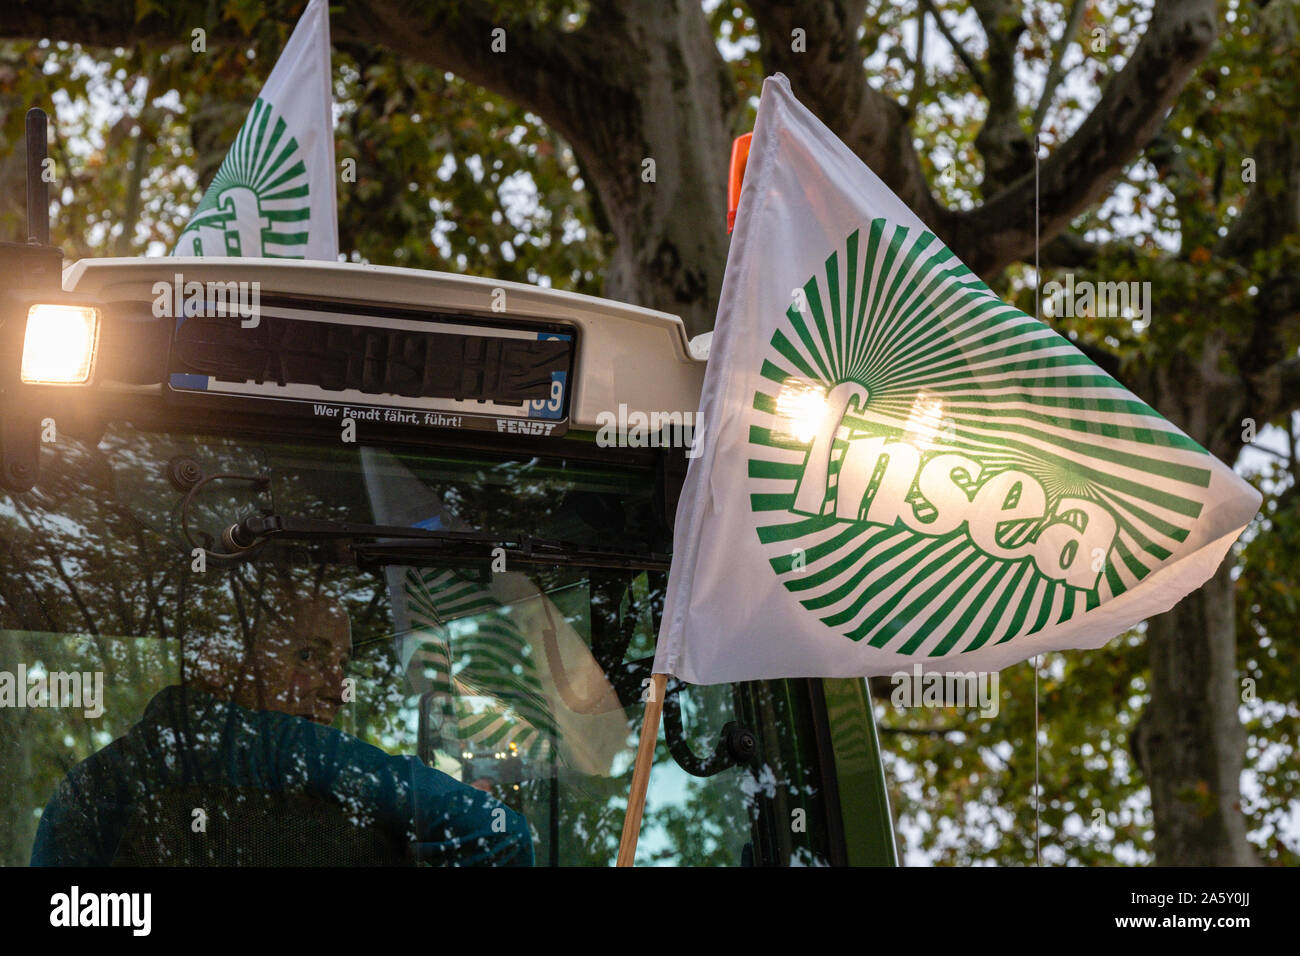 Oktober 22, 2019, Lyon, Auvergne-Rh ône-Alpes, Frankreich - Demonstration der Landwirte. FNSEA Flagge von Traktor eingeschaltet Stockfoto